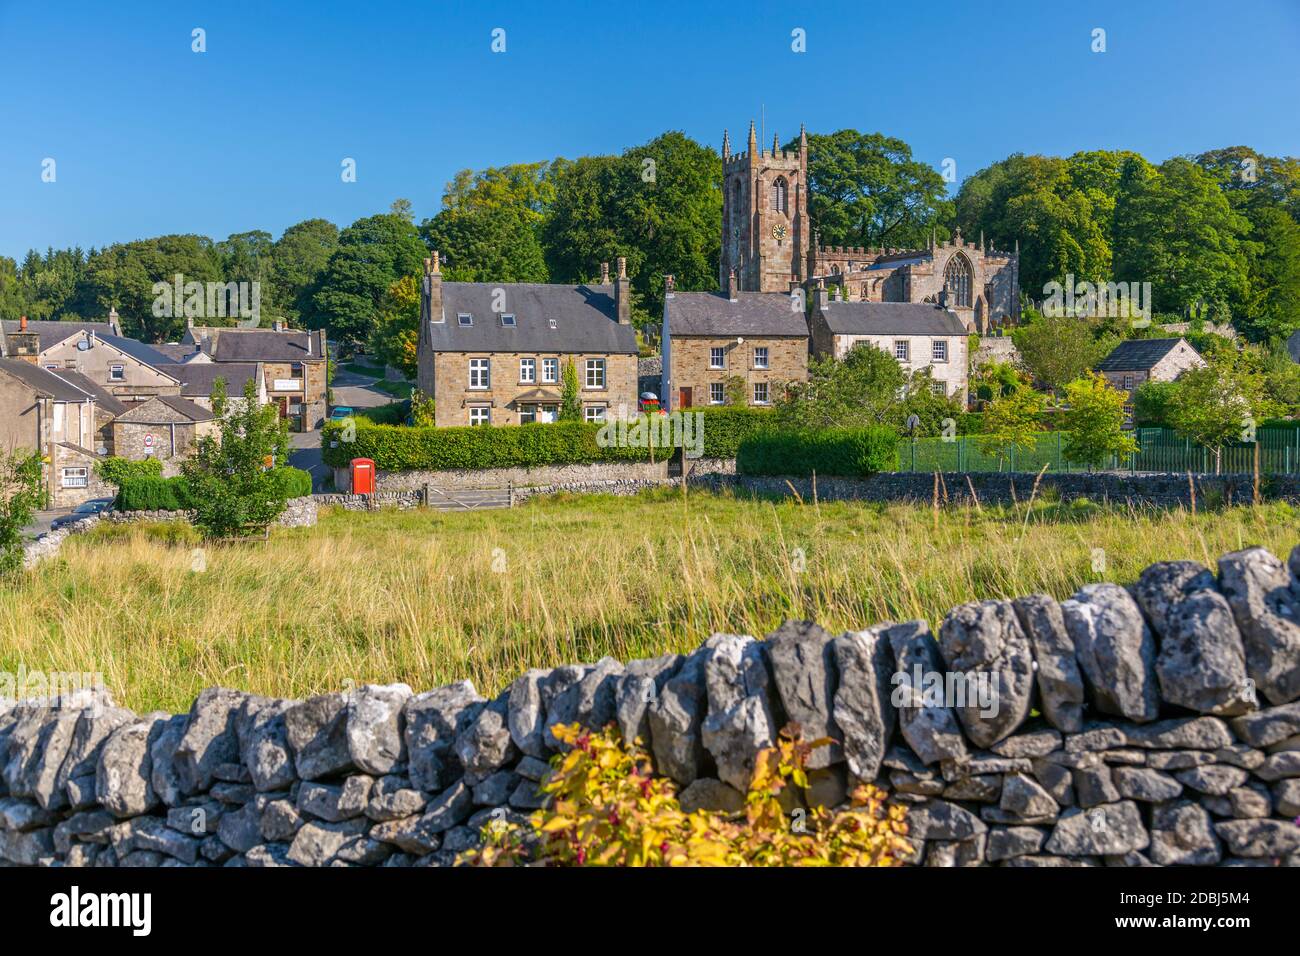 Vista della chiesa del villaggio e muri in pietra a secco, Hartington, Peak District National Park, Derbyshire, Inghilterra, Regno Unito, Europa Foto Stock